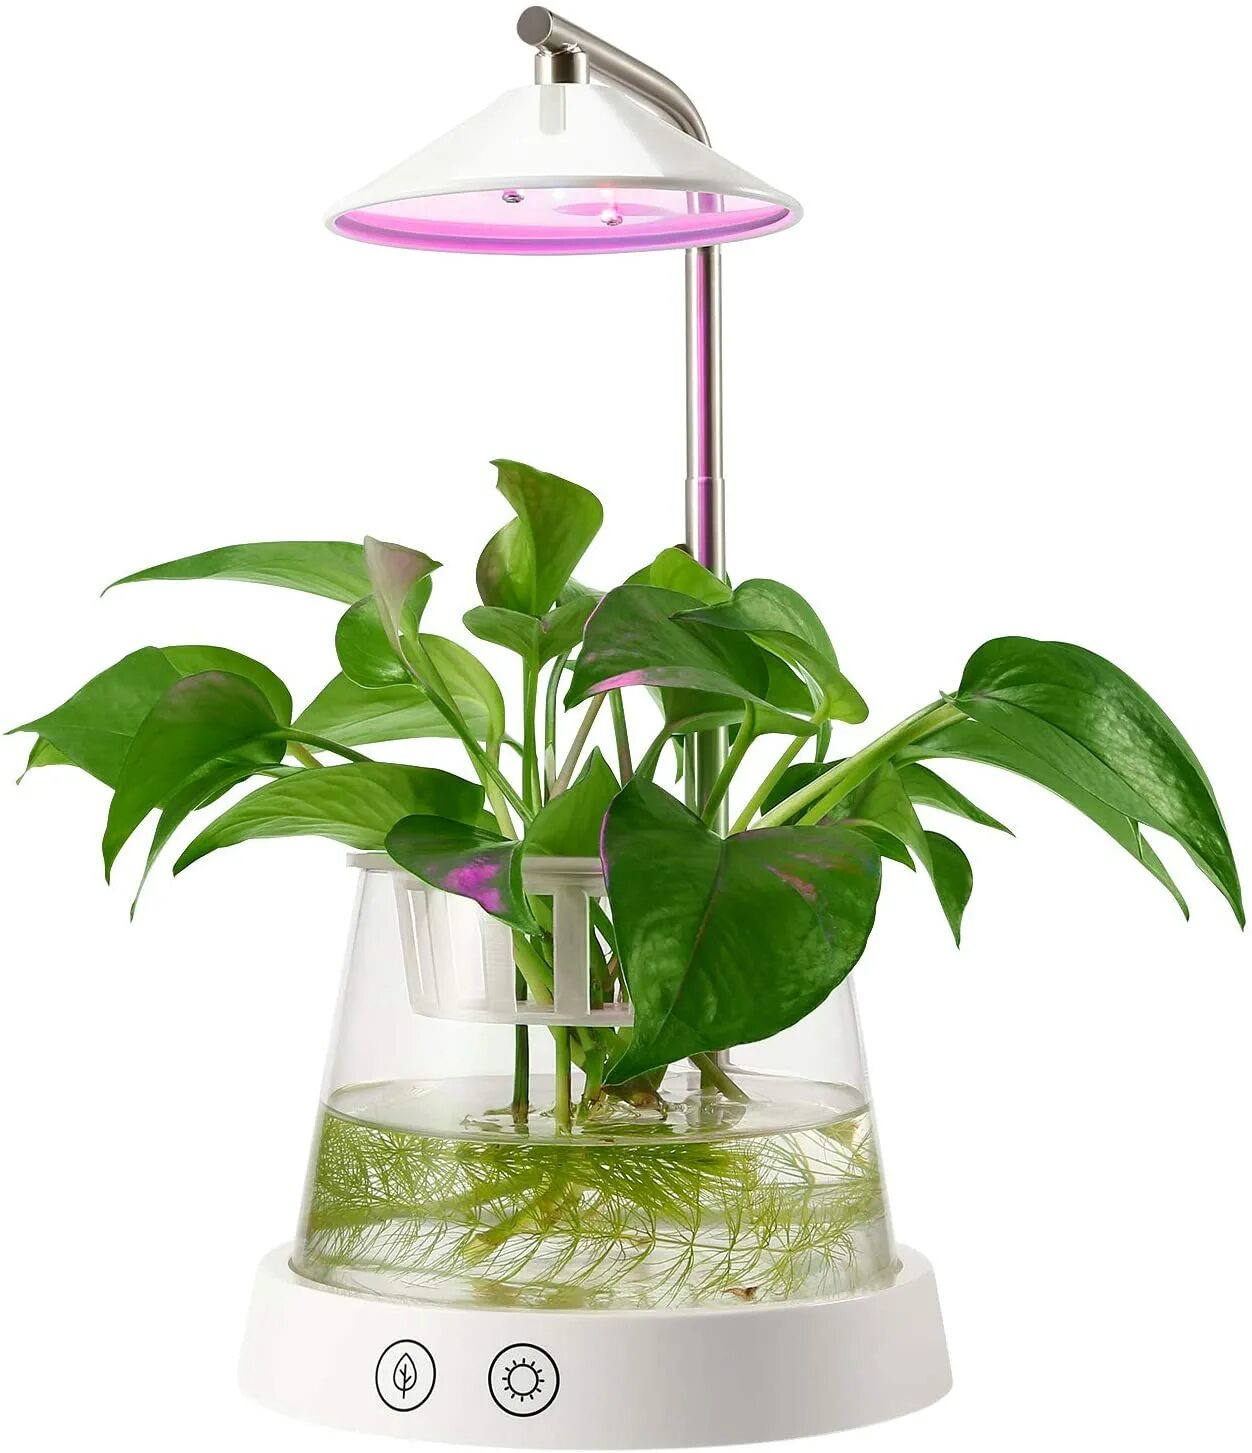 Plants control. Plant grow Light. Grow Light Garden. Garden led Desk Lamp. Леруа Мерлен Смоленск: подставка для фитолампы.